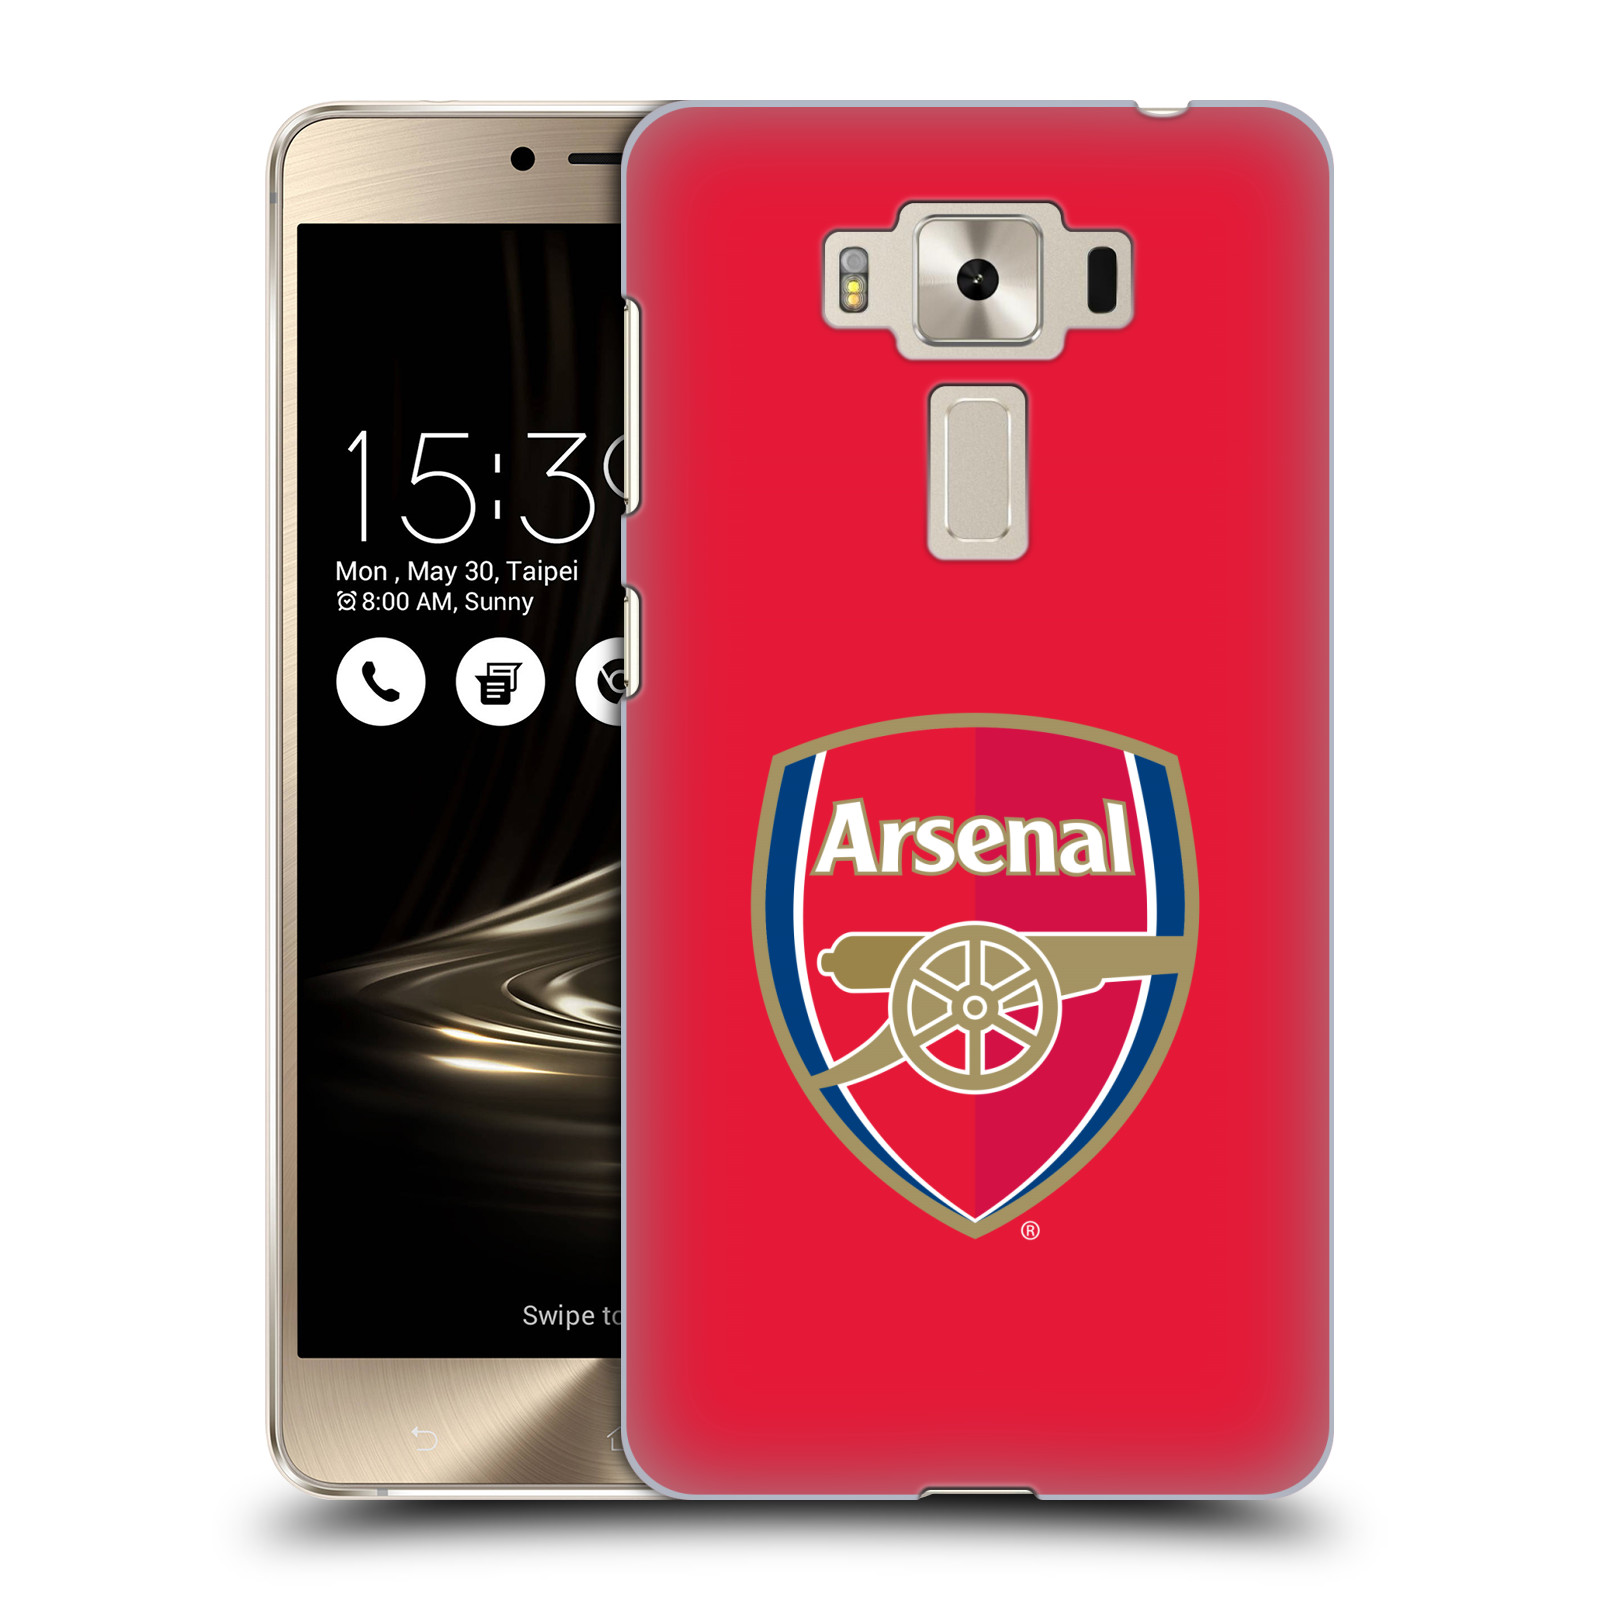 HEAD CASE plastový obal na mobil Asus Zenfone 3 DELUXE ZS550KL Fotbalový klub Arsenal znak barevný červené pozadí